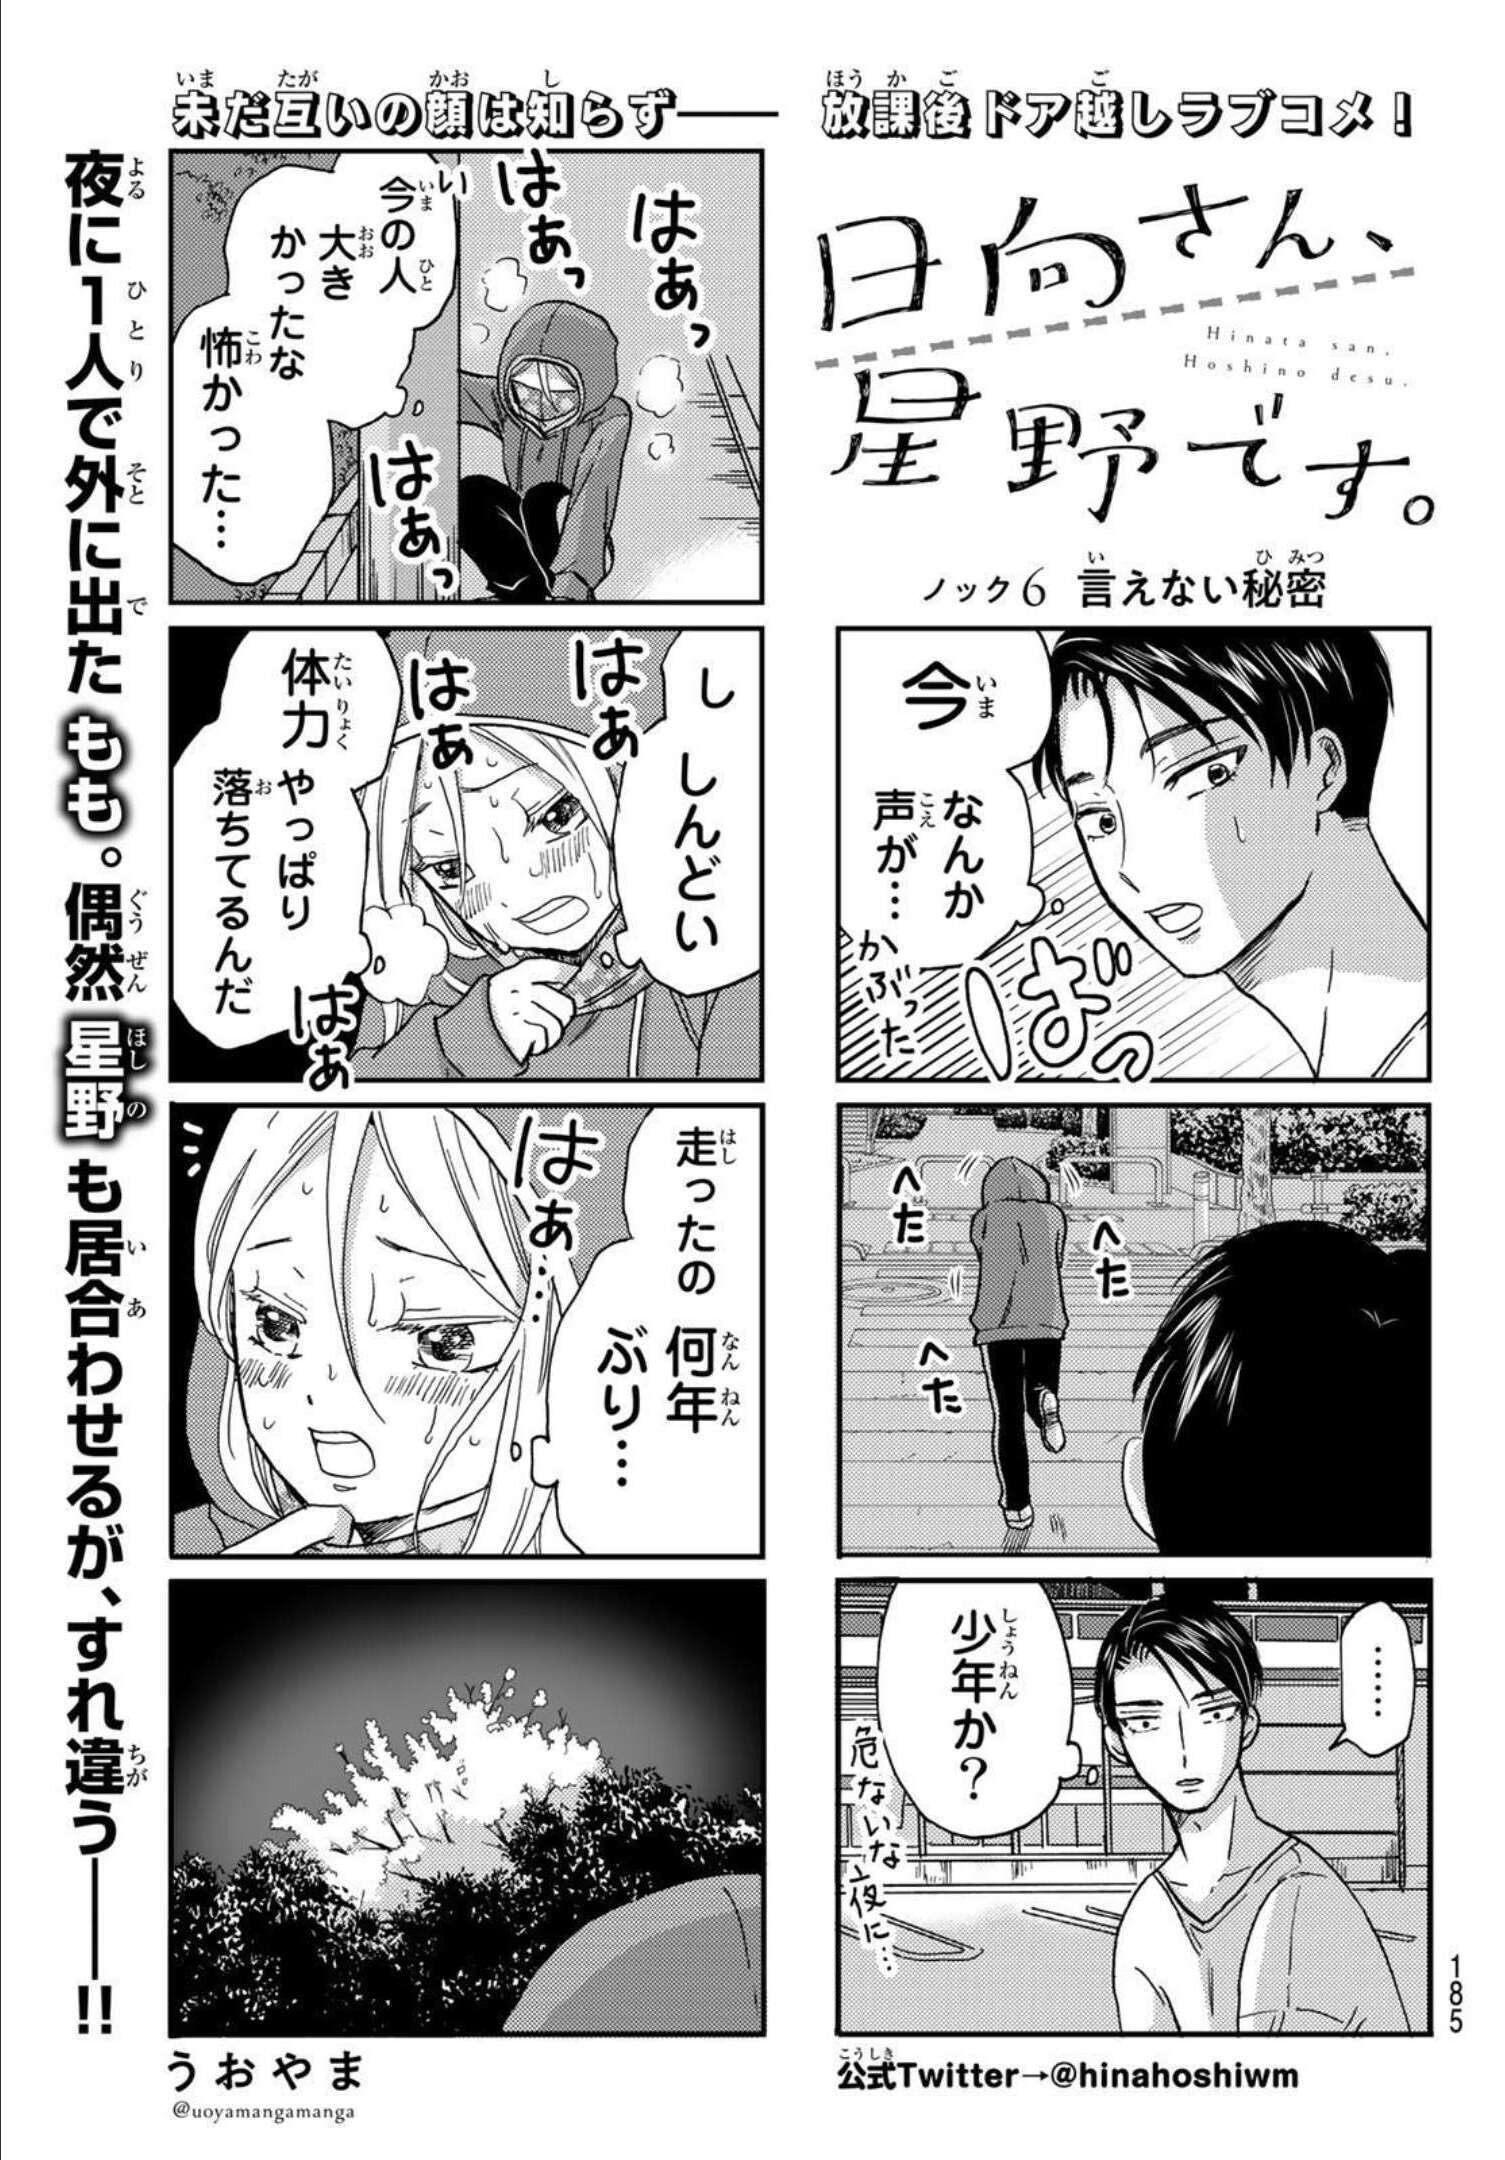 Hinata-san, Hoshino desu. - Chapter 006 - Page 1